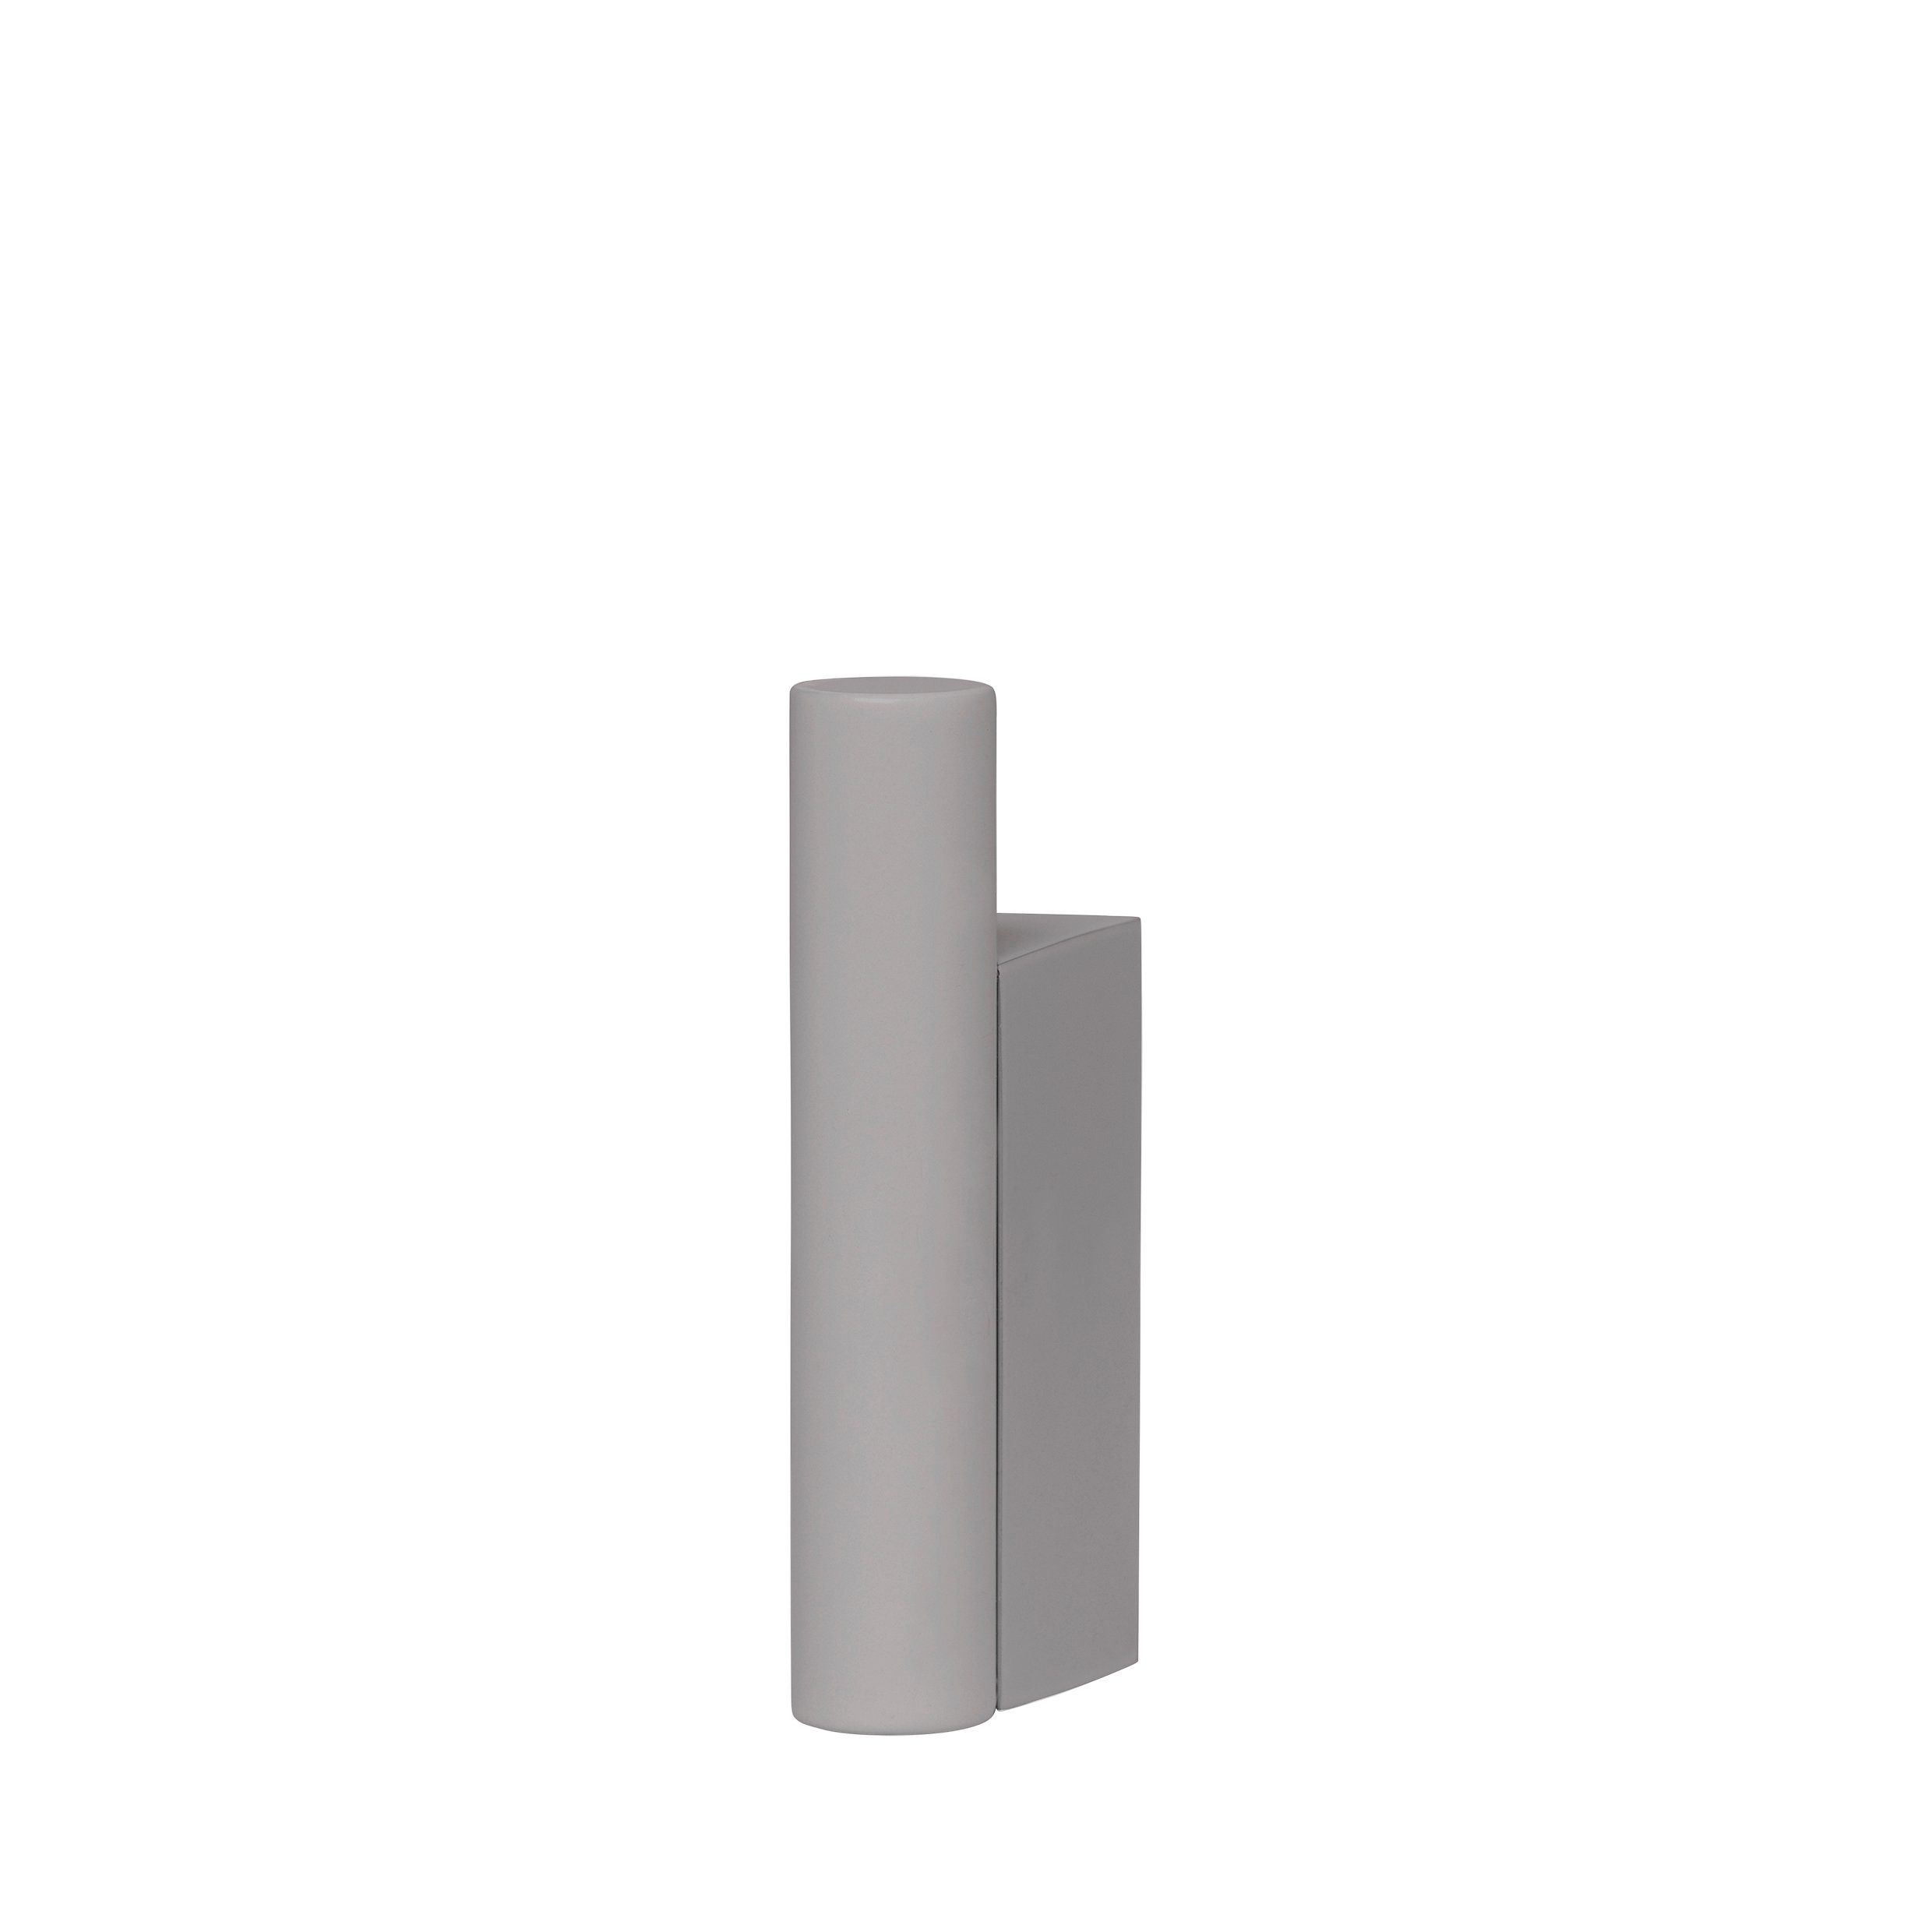 Handtuchstange für Türen bis 2 cm Türfalz - verstellbar von 43 - 80 cm